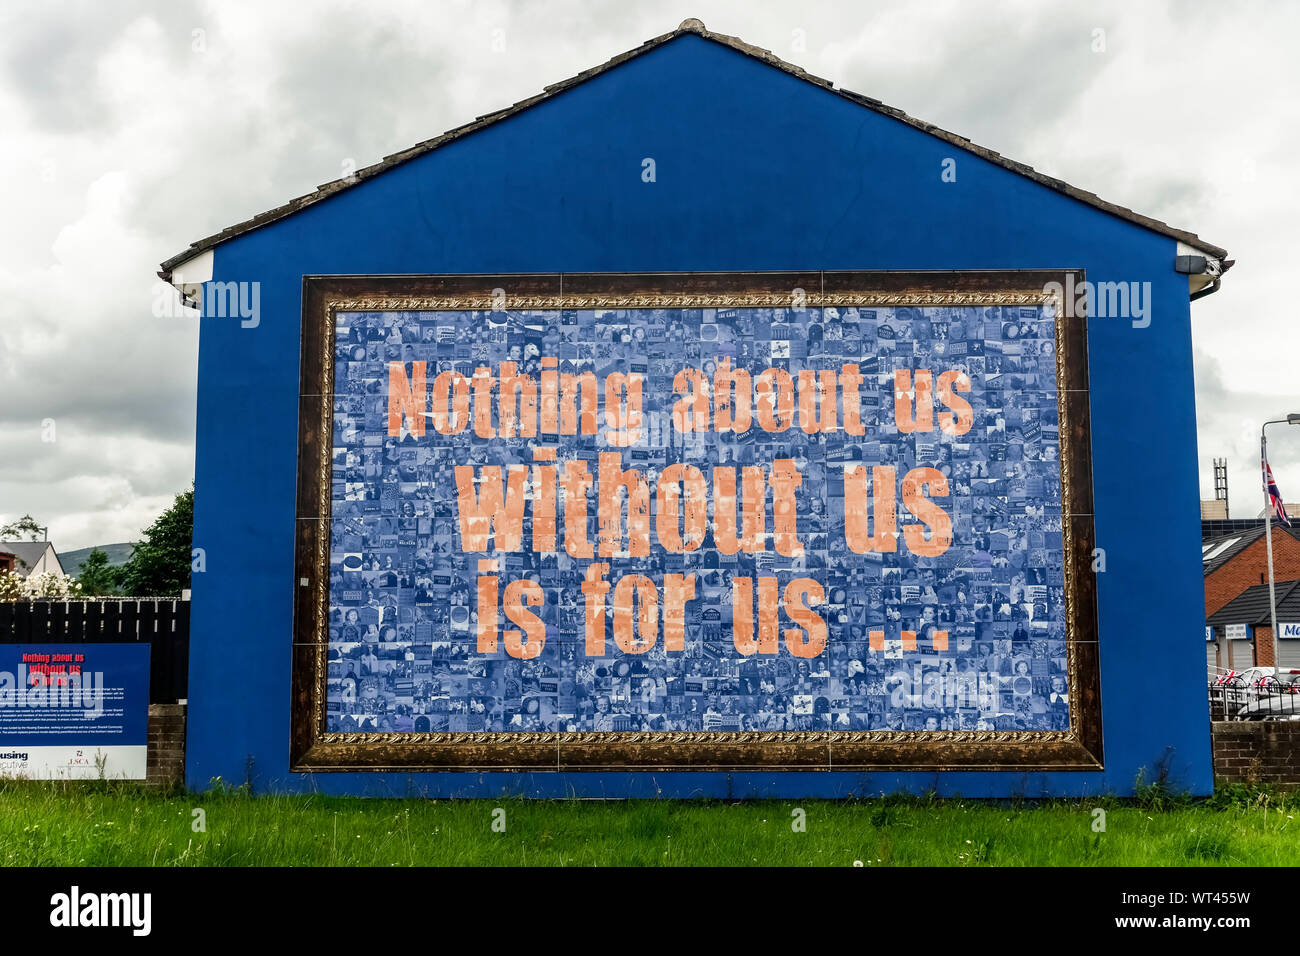 Peintures murales politiques du syndicat de défense Ulster. Abaissement de Shankill. West Belfast, Ulster, Irlande du Nord, Royaume-Uni, Royaume-Uni, Europe. Banque D'Images